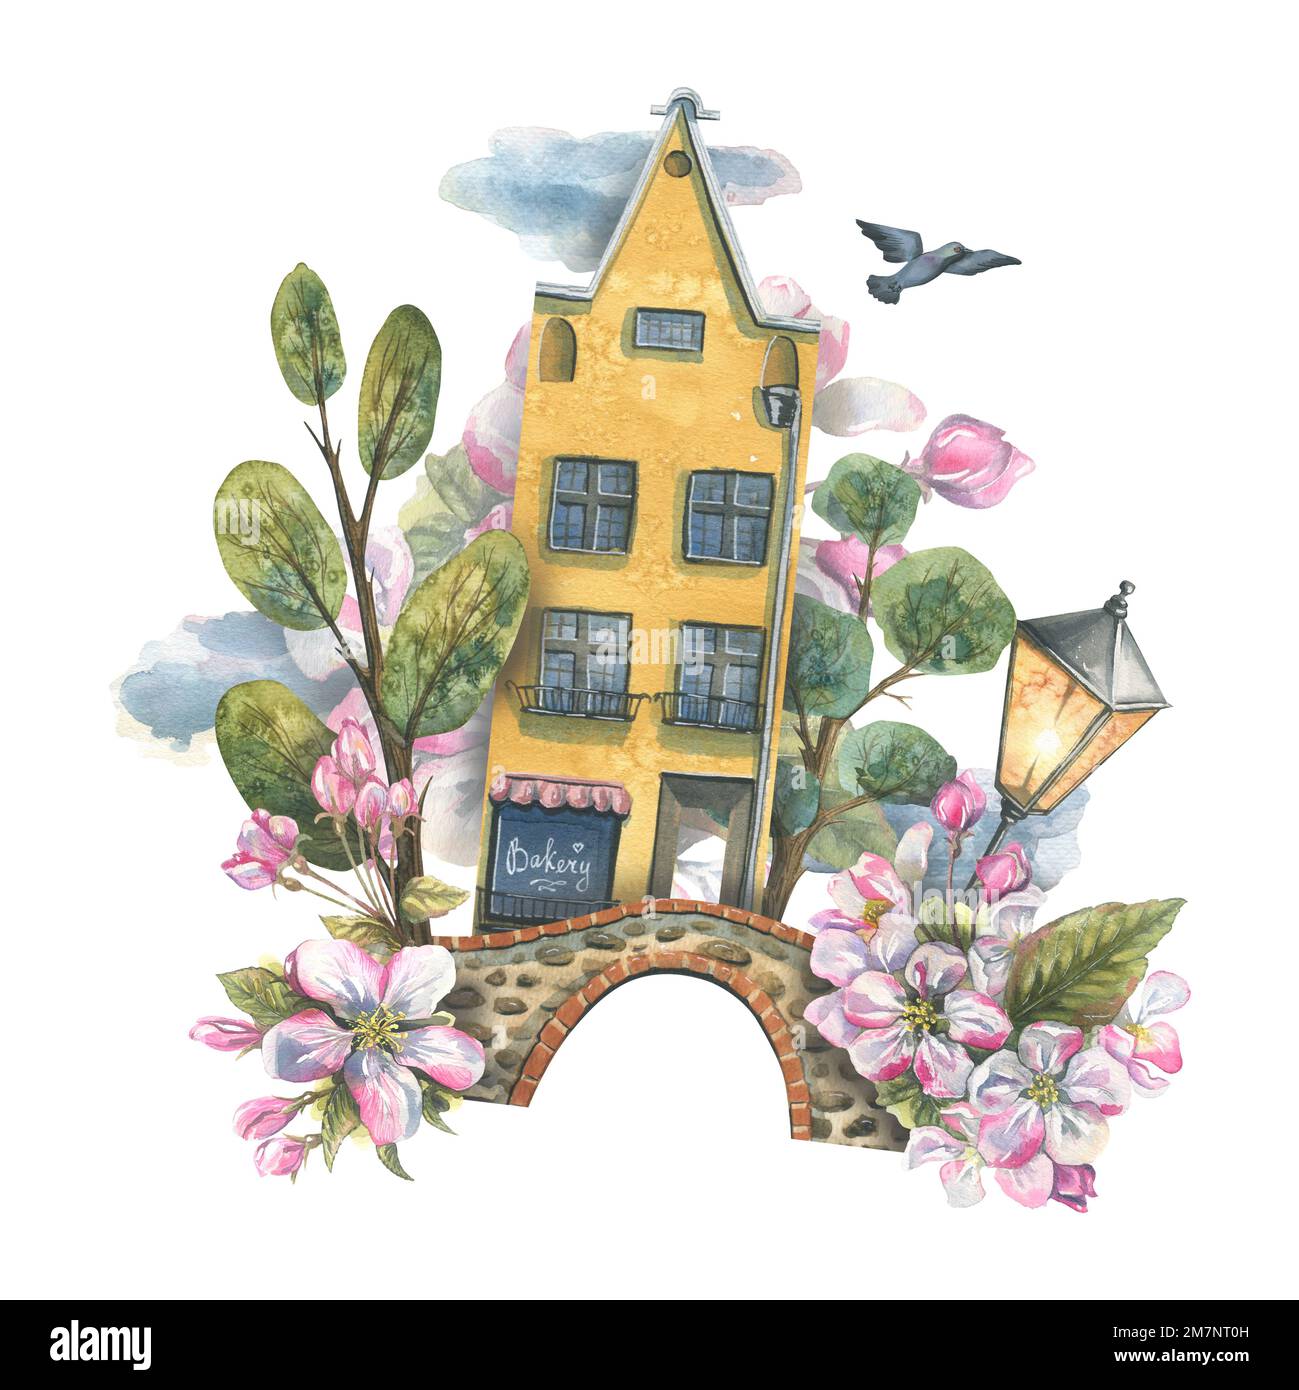 Une jolie maison jaune avec des arbres, un pont, une lanterne, un pigeon, des nuages et des pommiers en fleurs. Illustration aquarelle. Composition du ressort du Banque D'Images